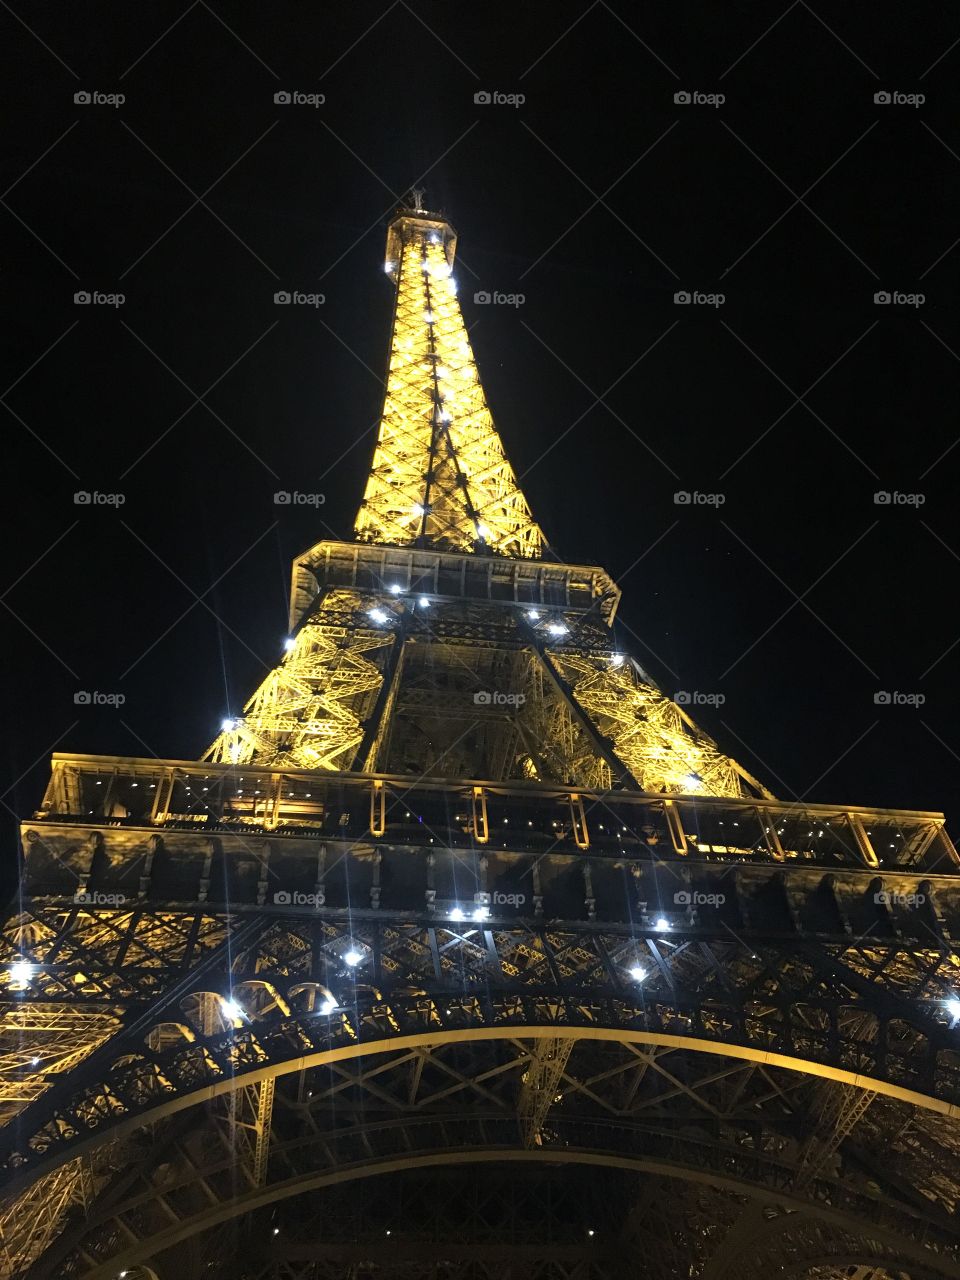 No existe mejor sensación que estar de bajo de la famosa e histórica torre Eiffel, por eso esta foto es tan significativa, ya que uno puede sentirse en la misma, apreciando su grandeza y su belleza